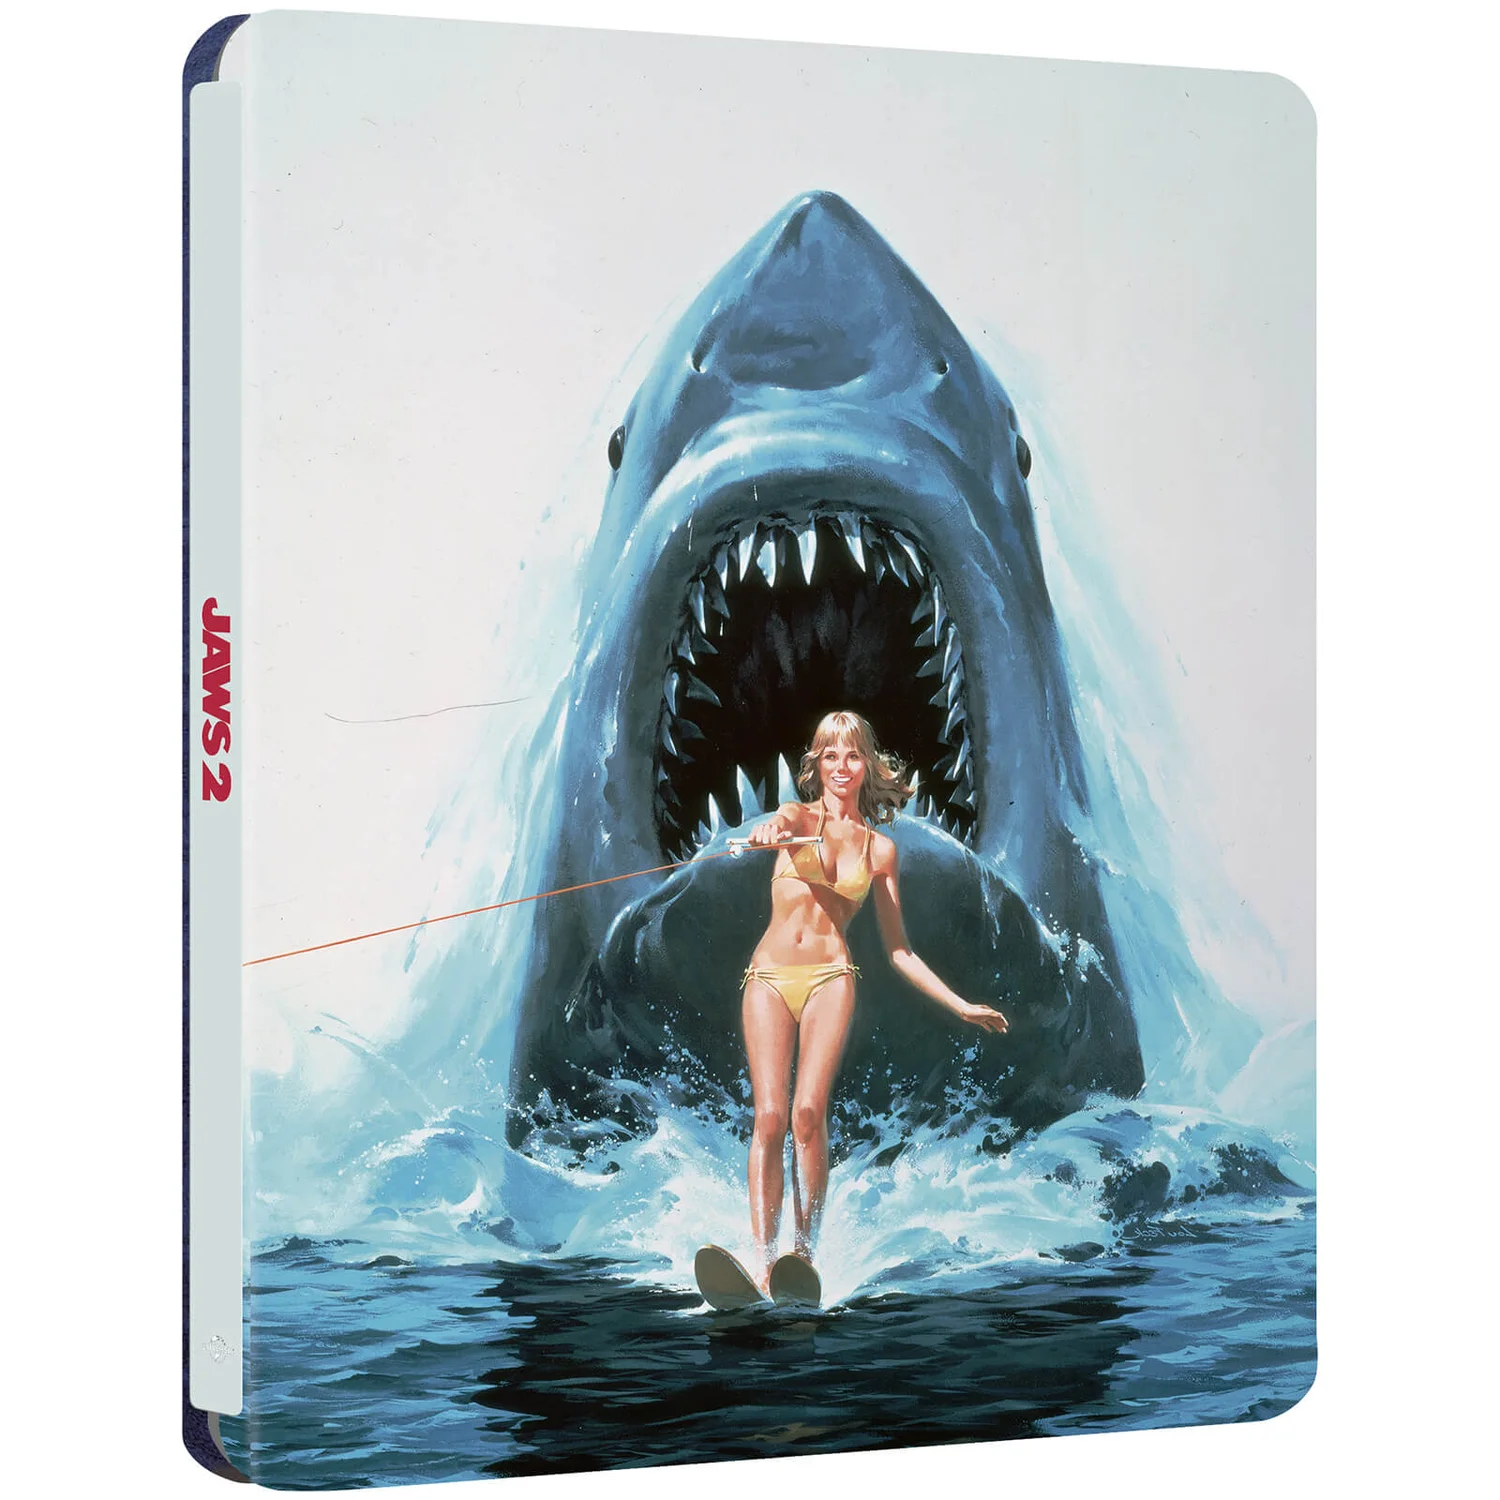 Re: Tiburón (Jaws, 1975, Steven Spielberg) y secuelas.